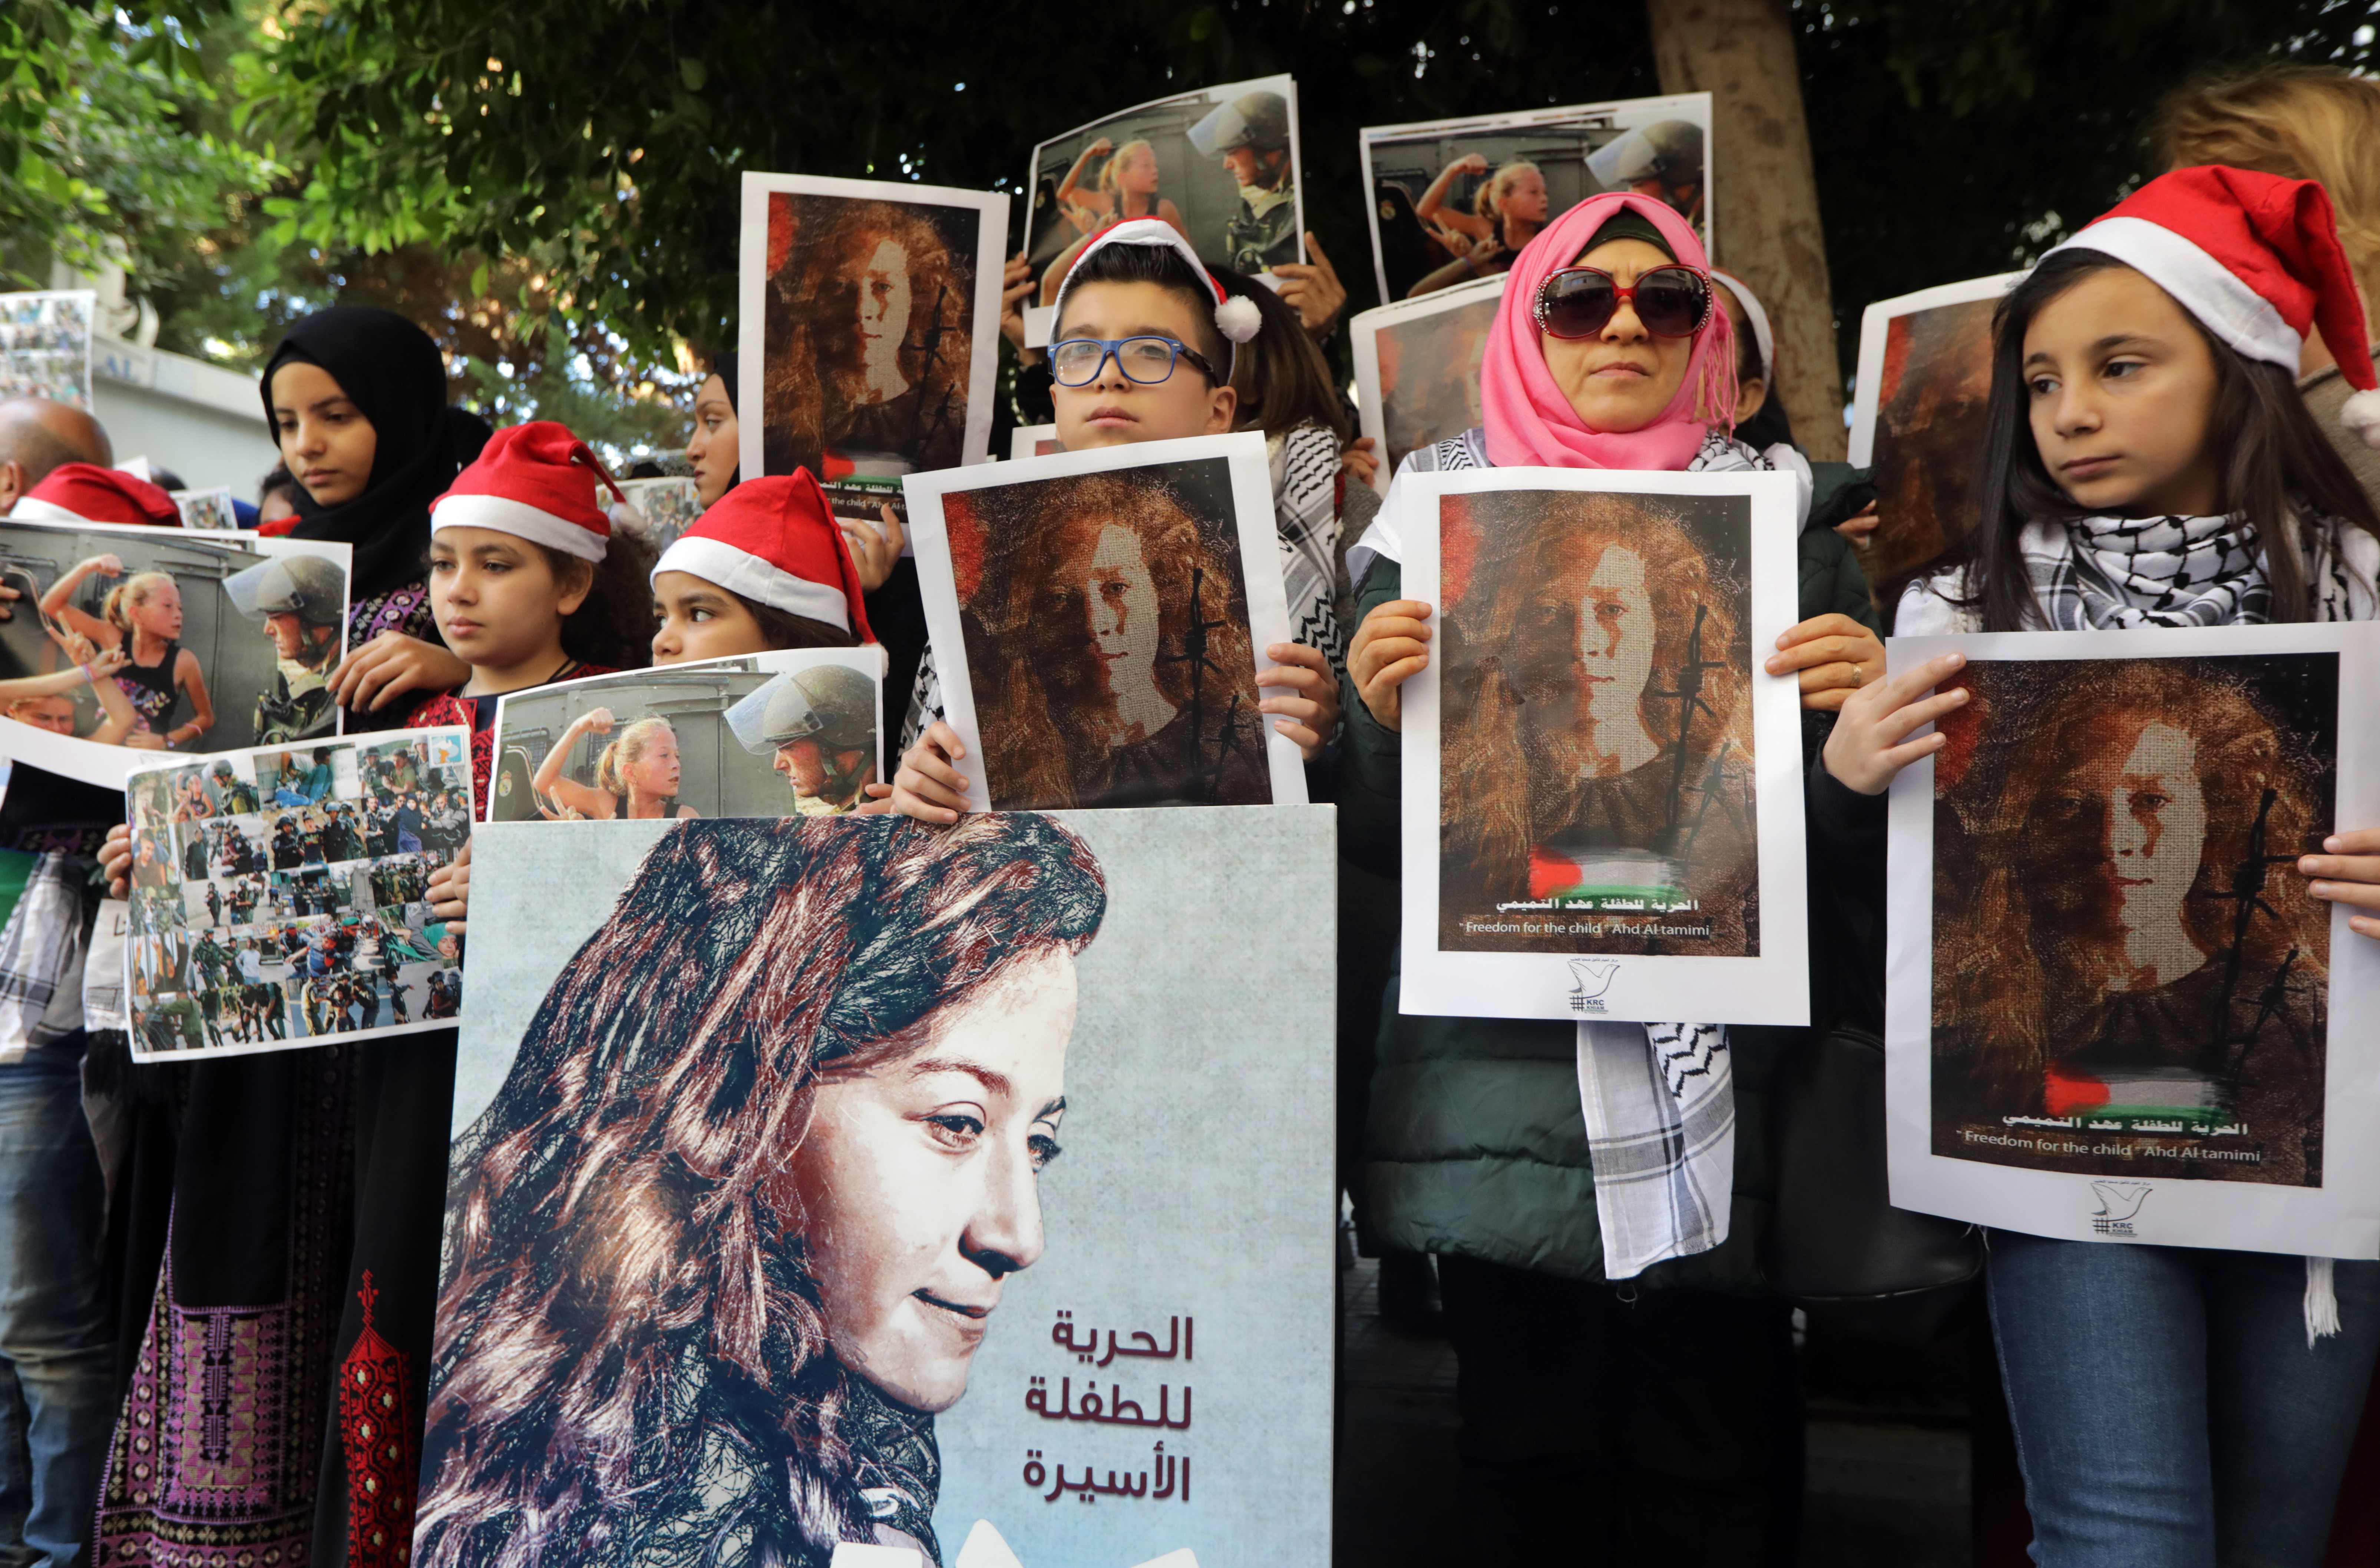  تظاهرات اللبنانيون فى بيروت 